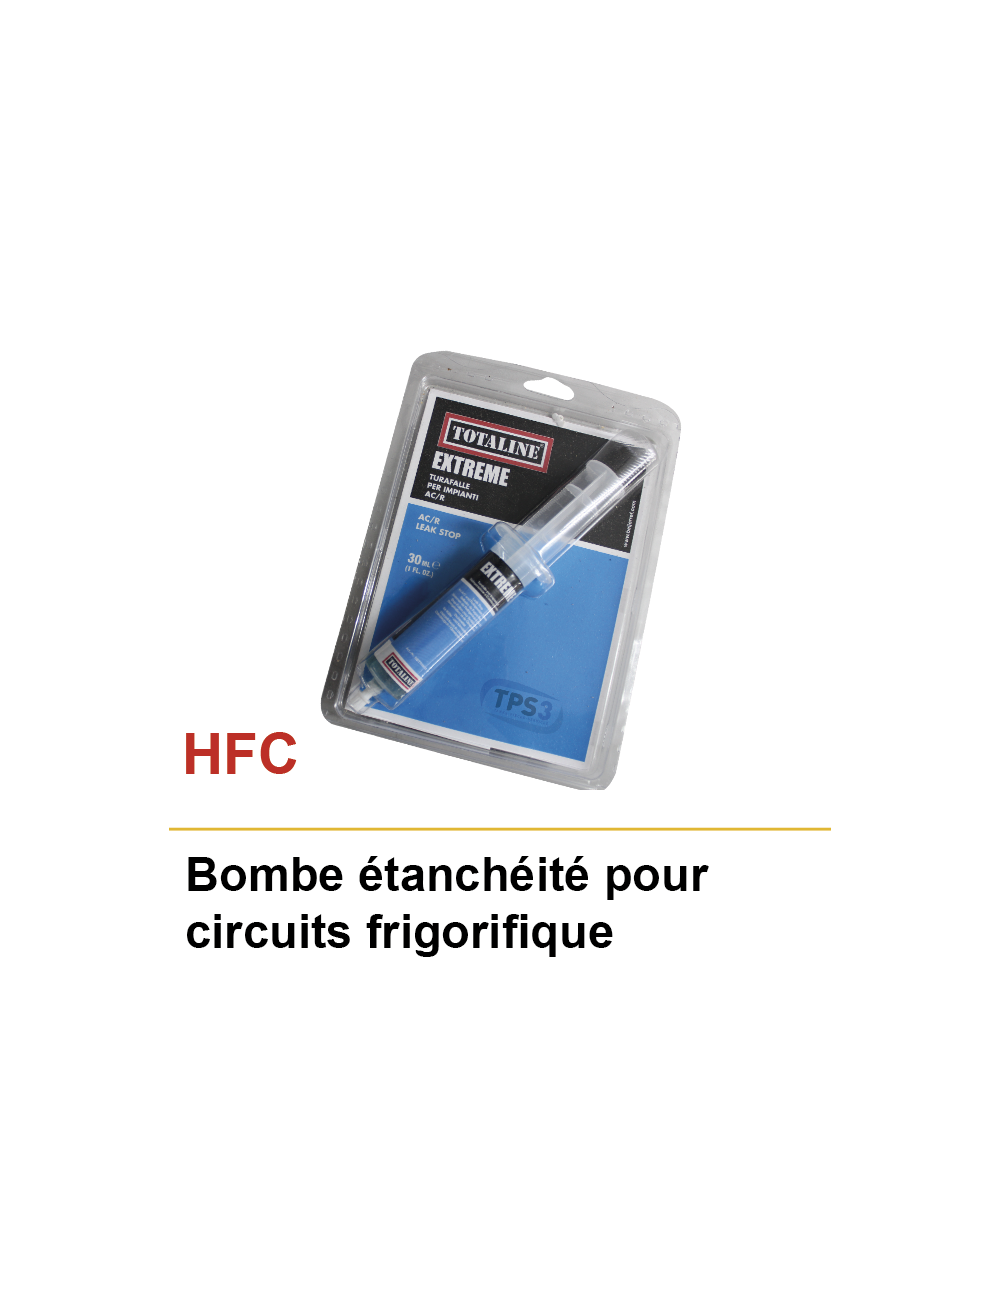 Bombe étanchéité pour circuits frigorifiques (HFC)